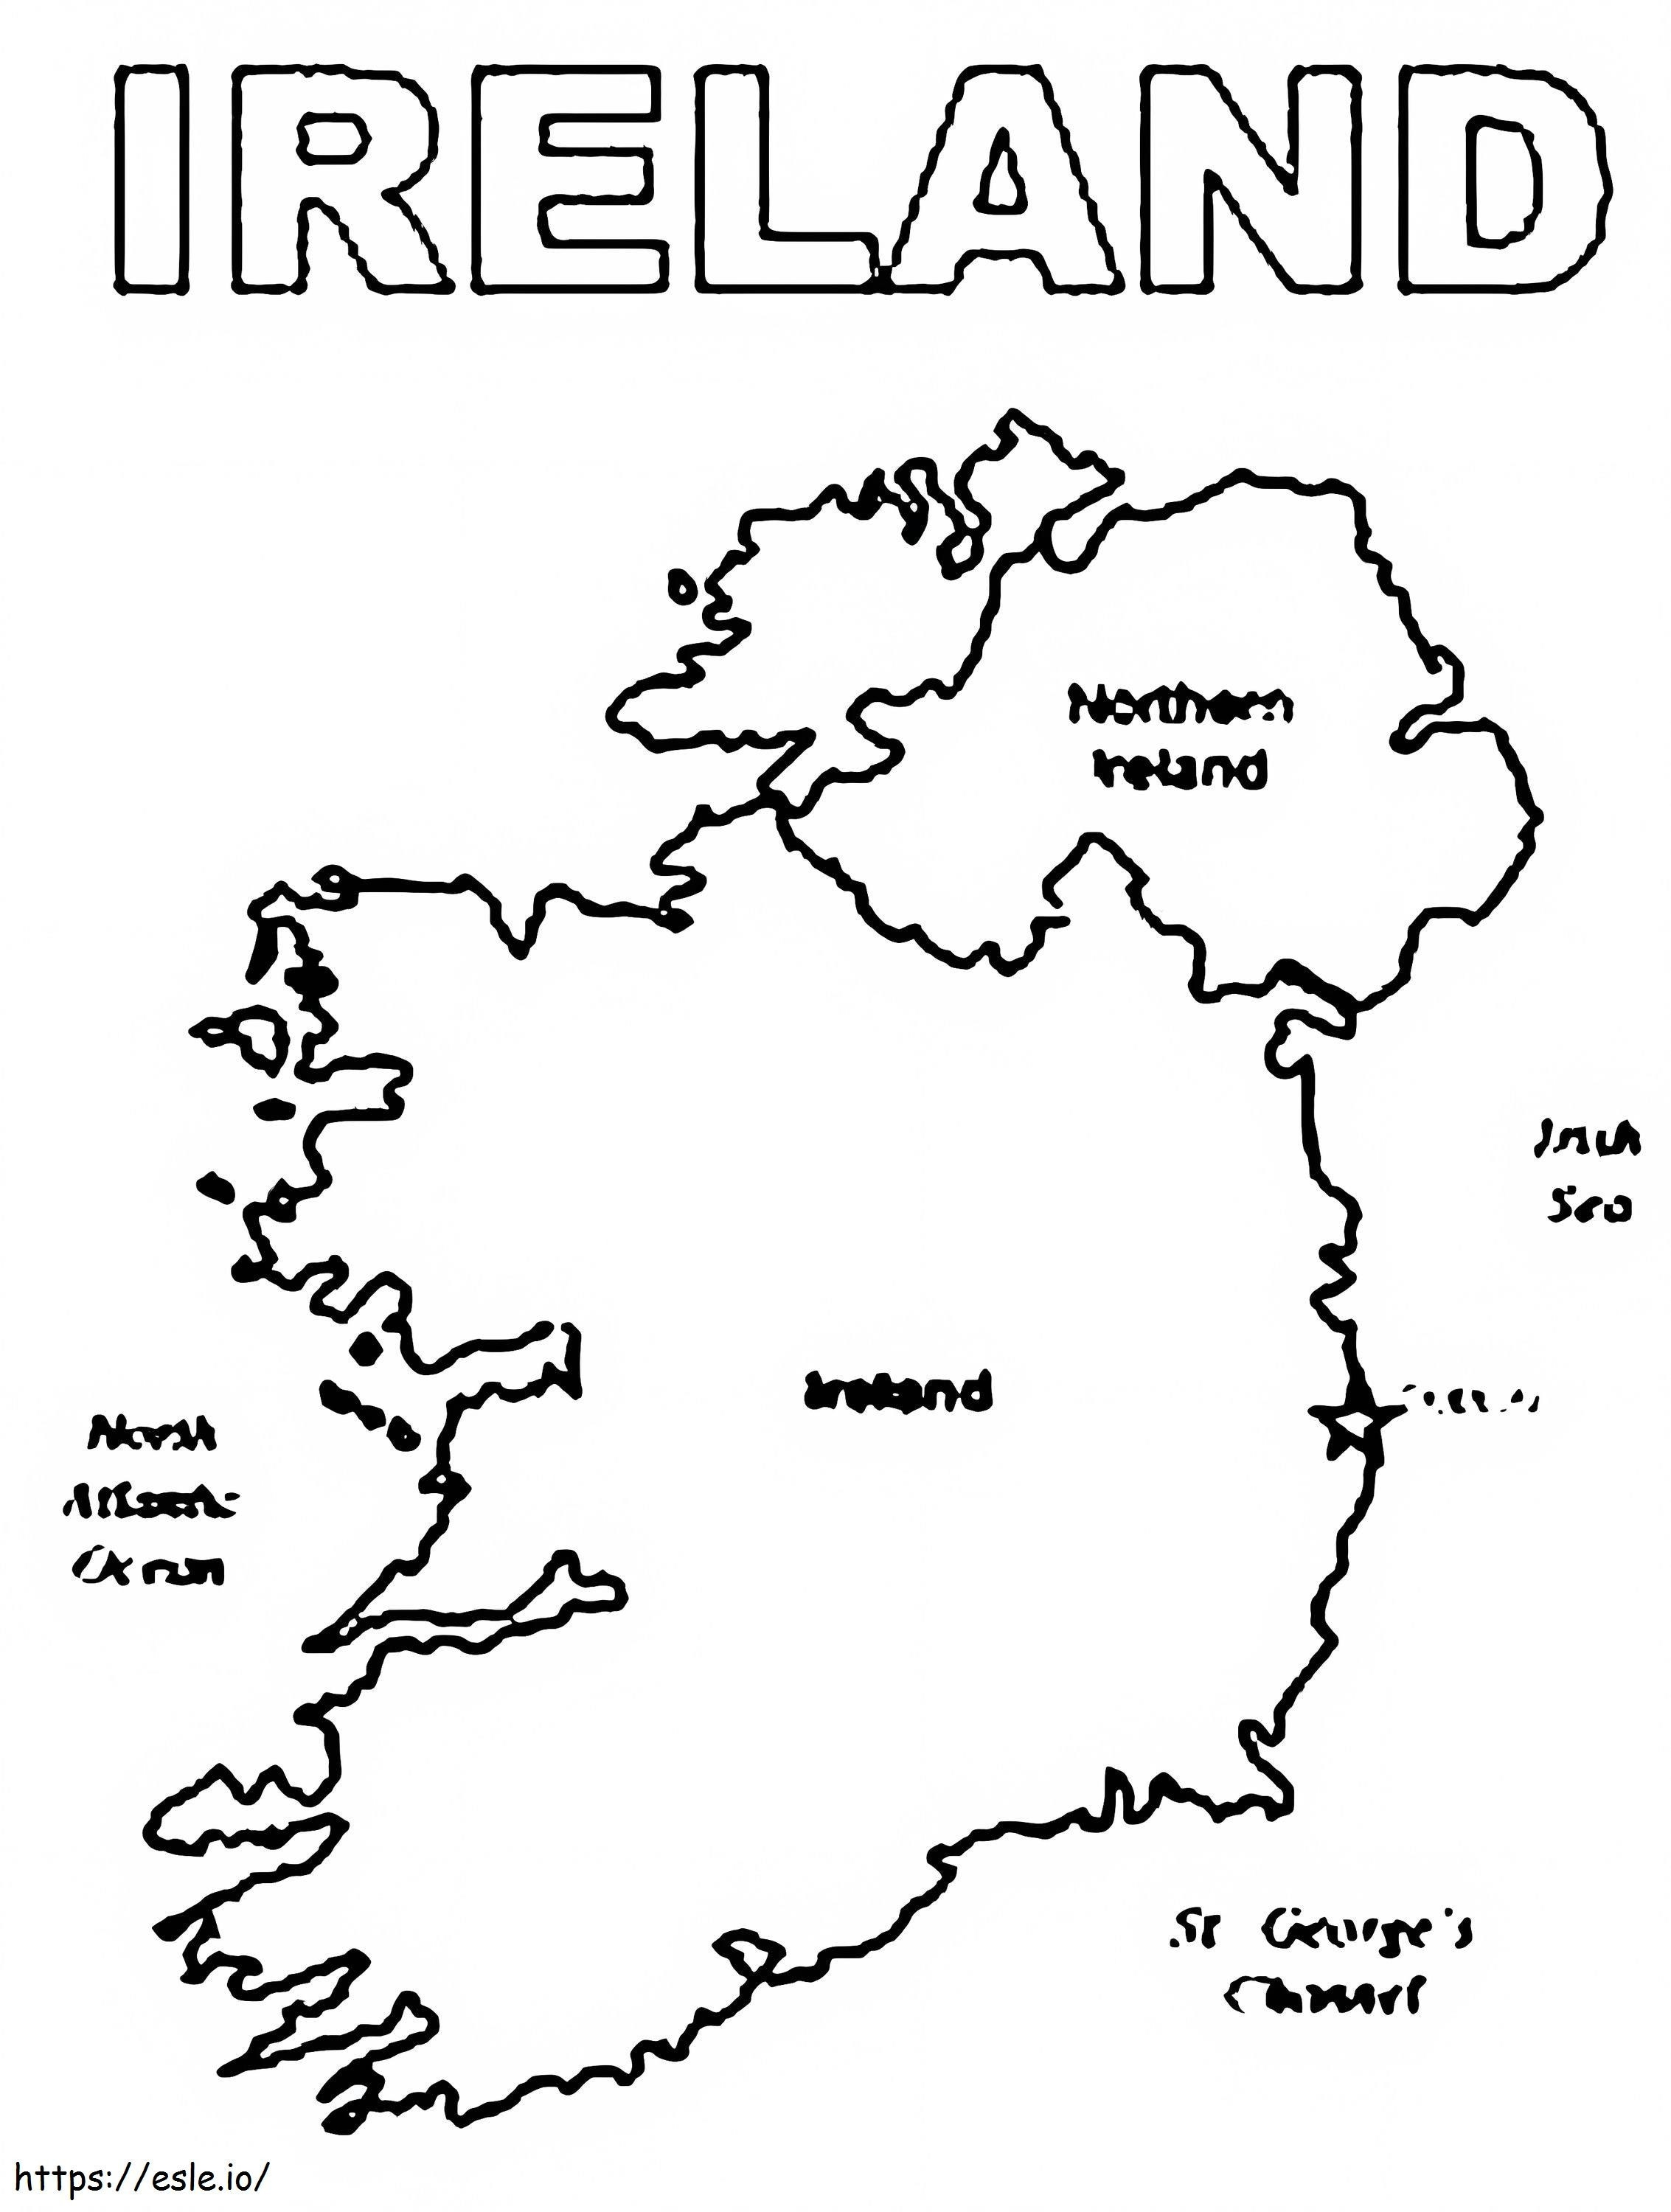 Irlands Karte ausmalbilder